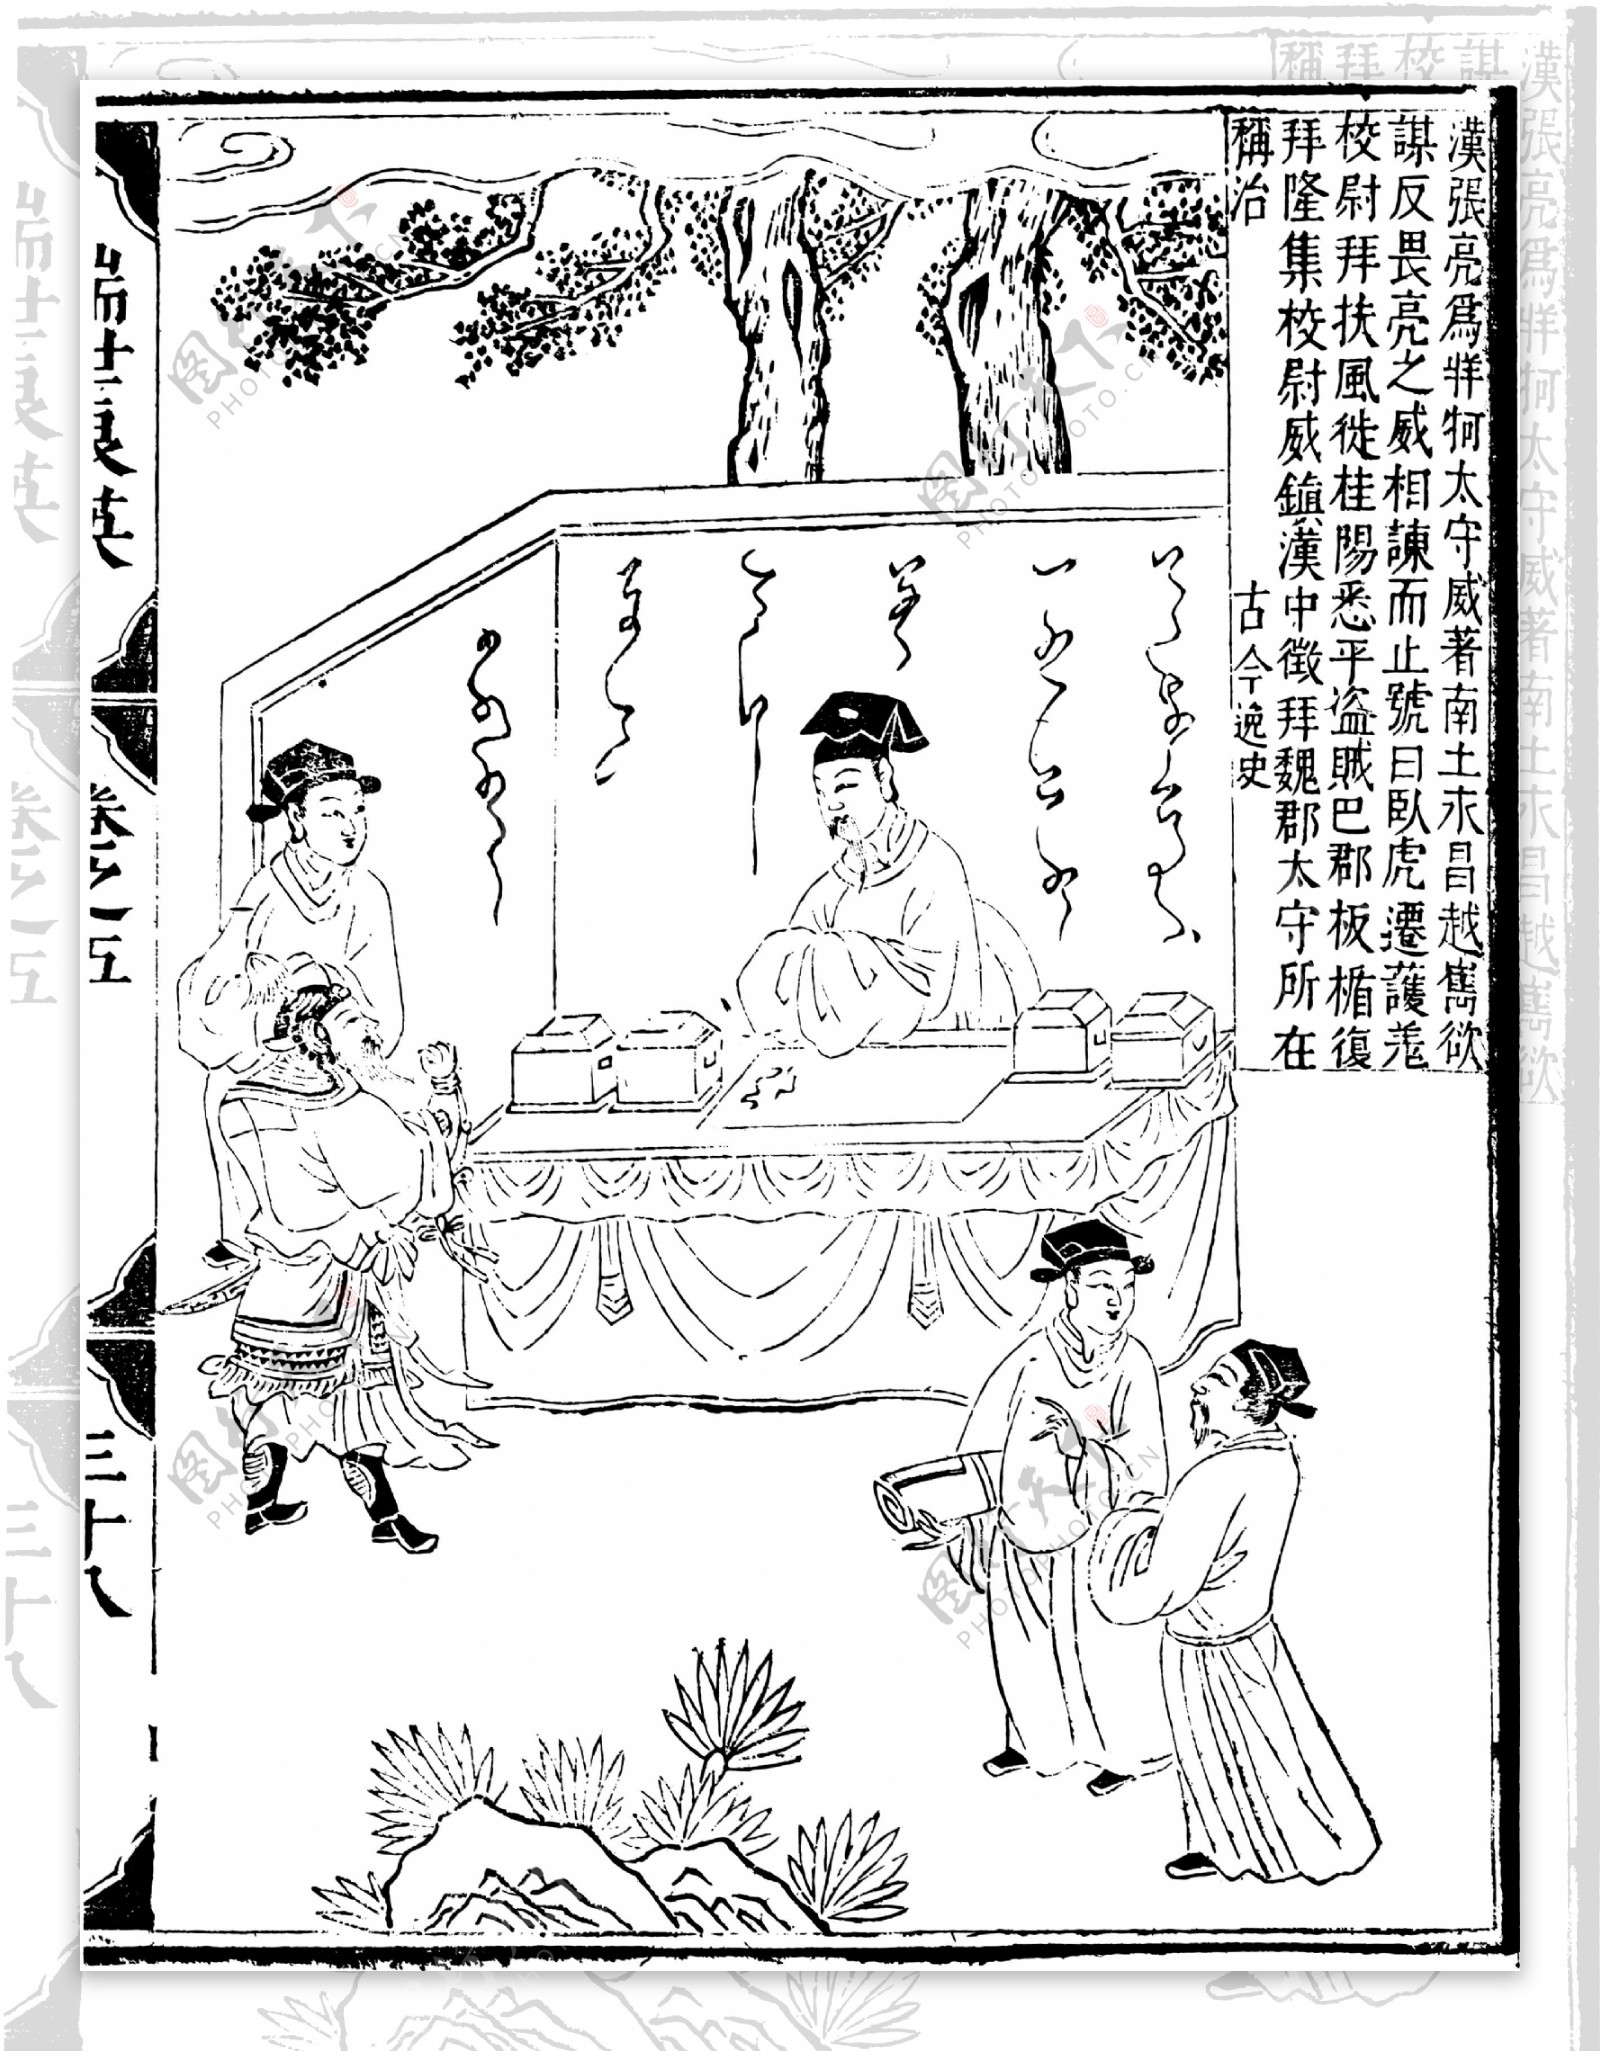 瑞世良英木刻版画中国传统文化81